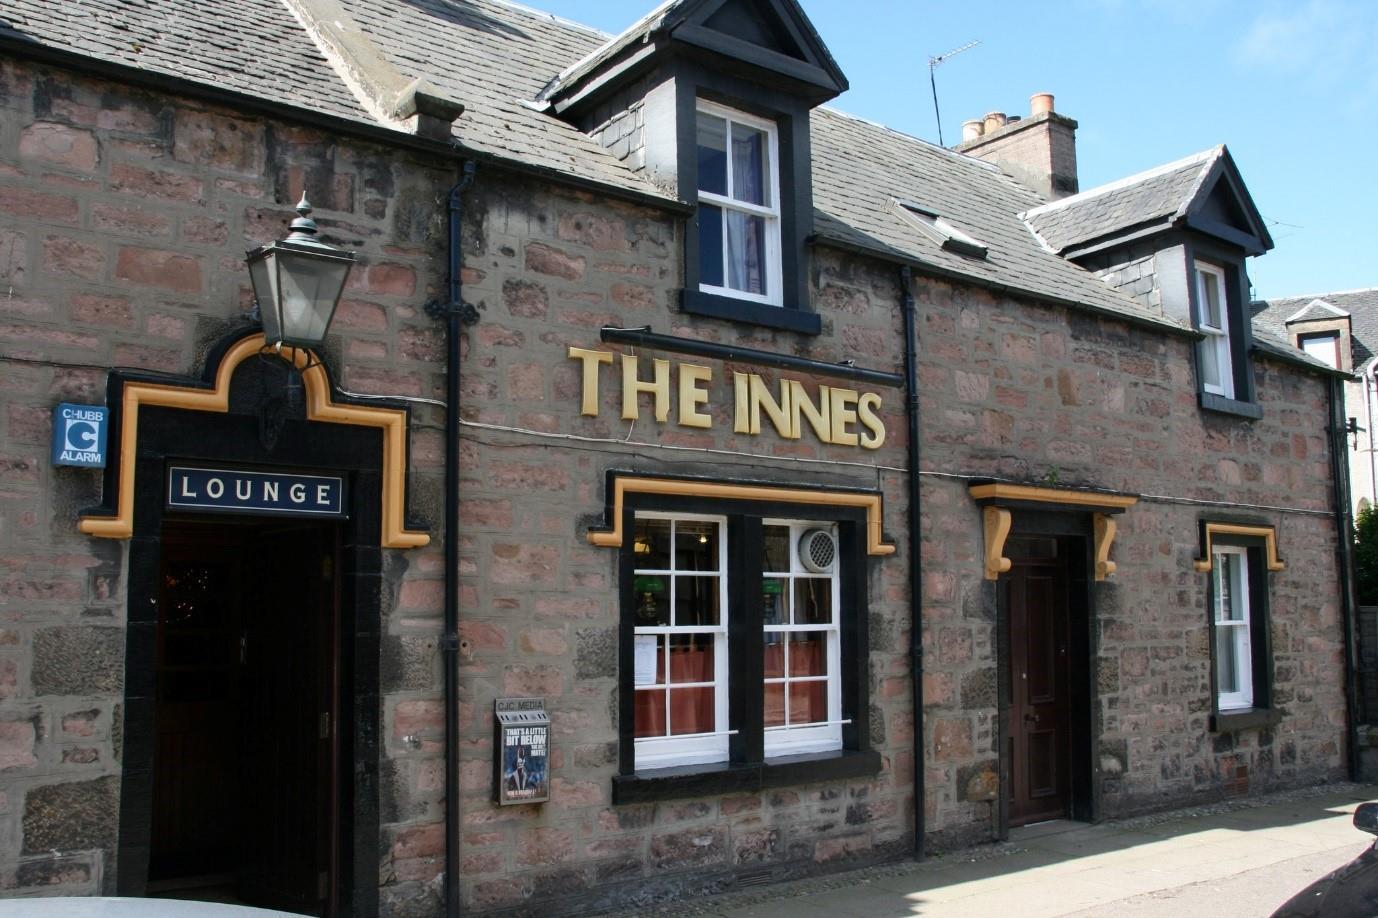 The Innes Bar